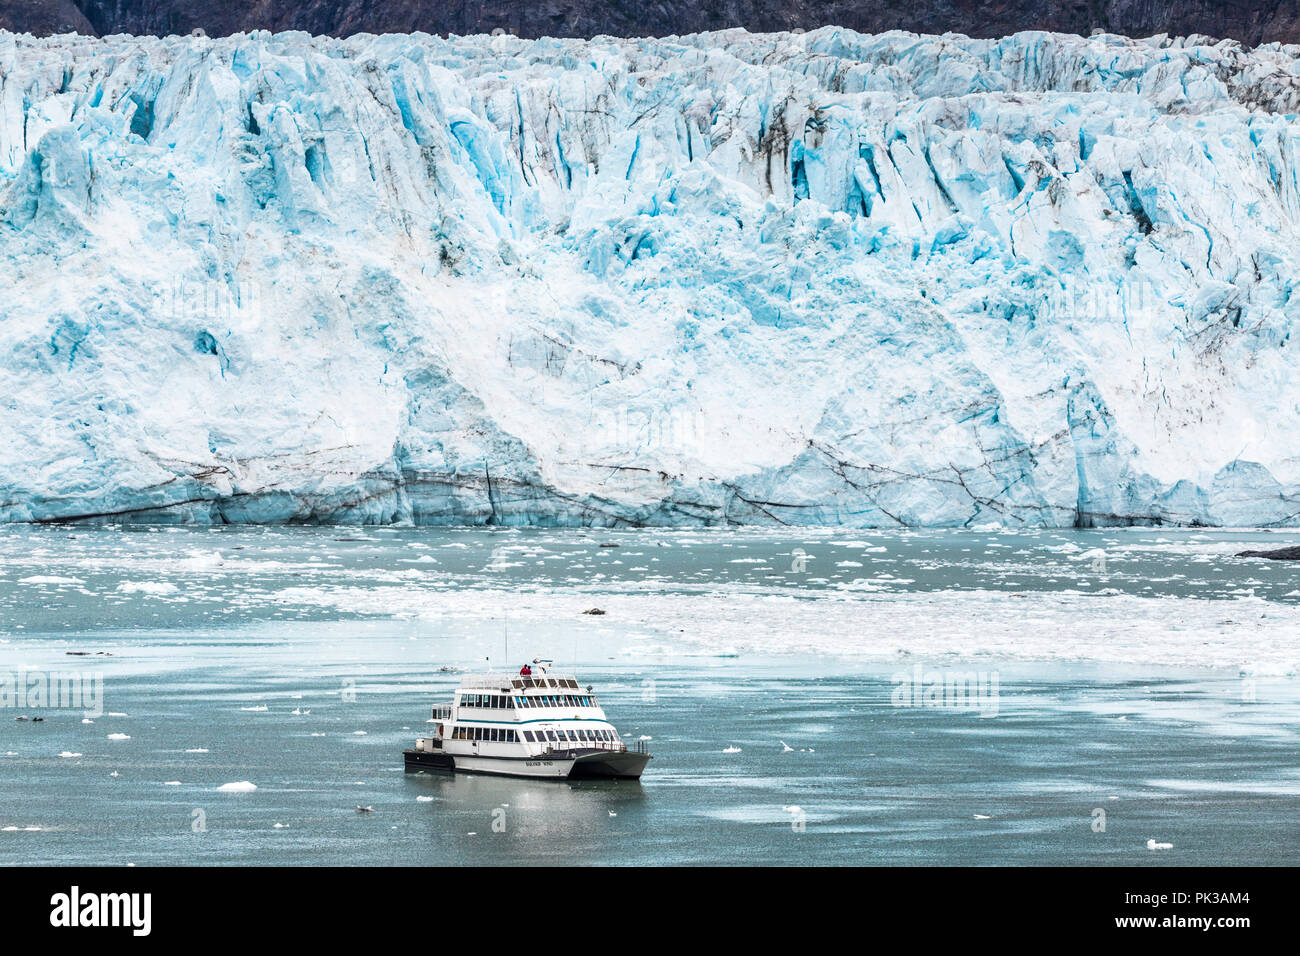 Le bateau d'excursion vent Baranof touristes donnant une vue rapprochée de la face cassée de la Margerie Glacier dans l'entrée de Tarr Glacier Bay, Alaska, USA Banque D'Images